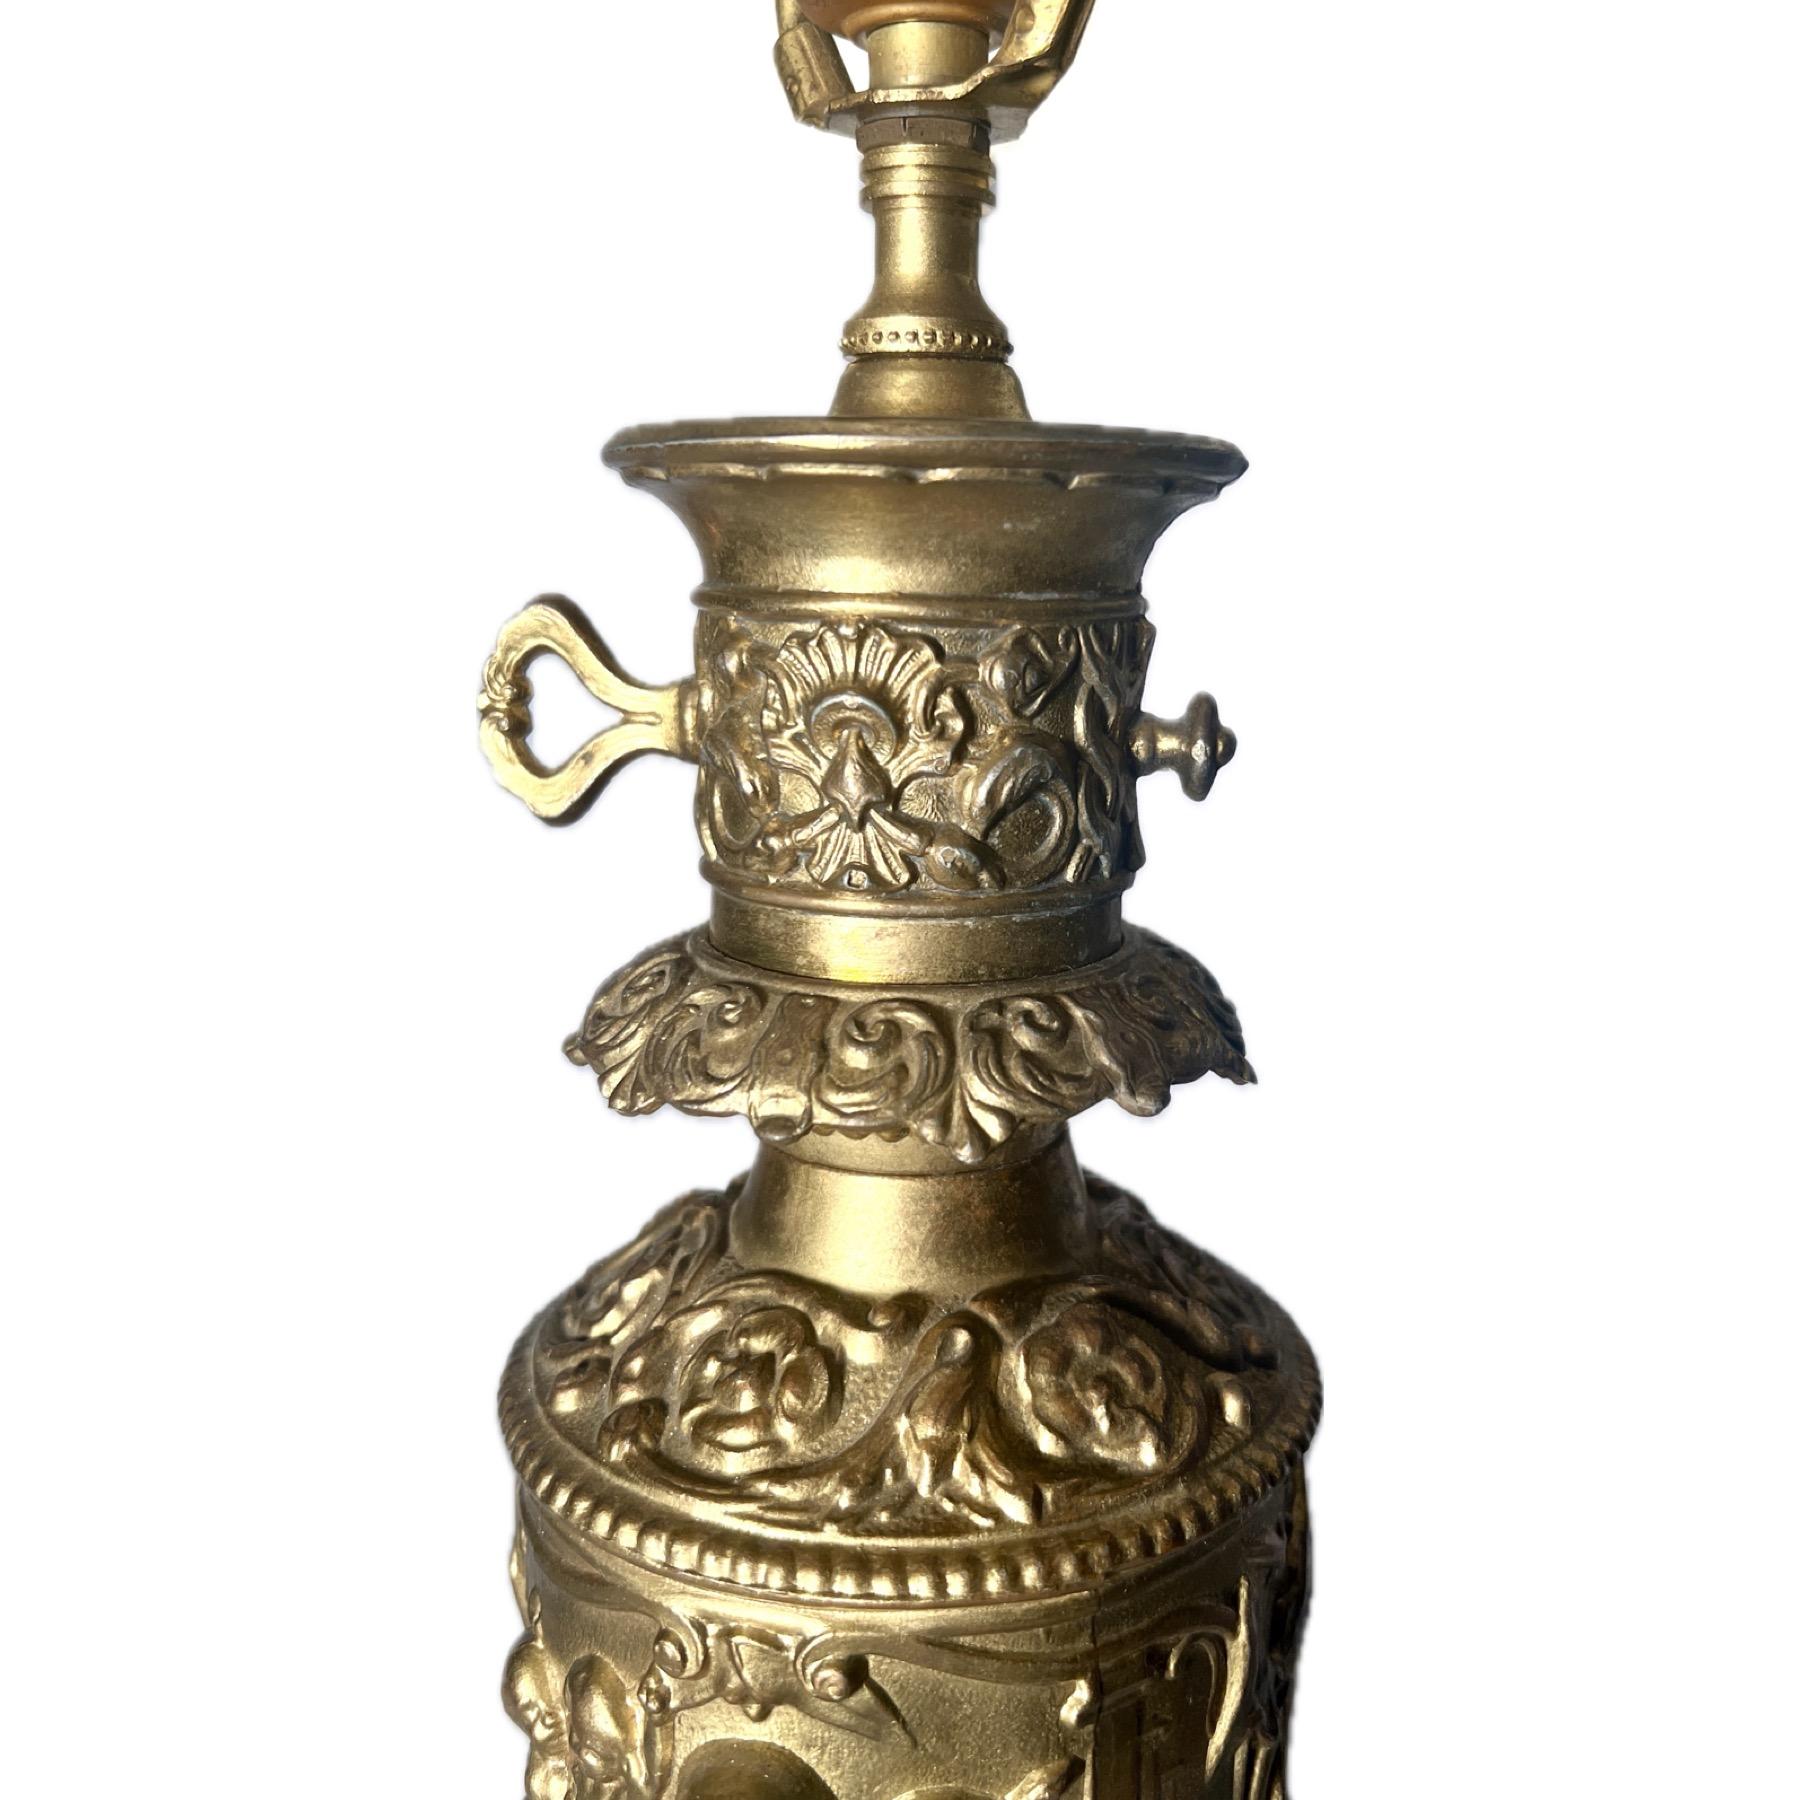 Paire d'anciennes lampes à huile en laiton repoussé et doré, Circa 1830-1840.
